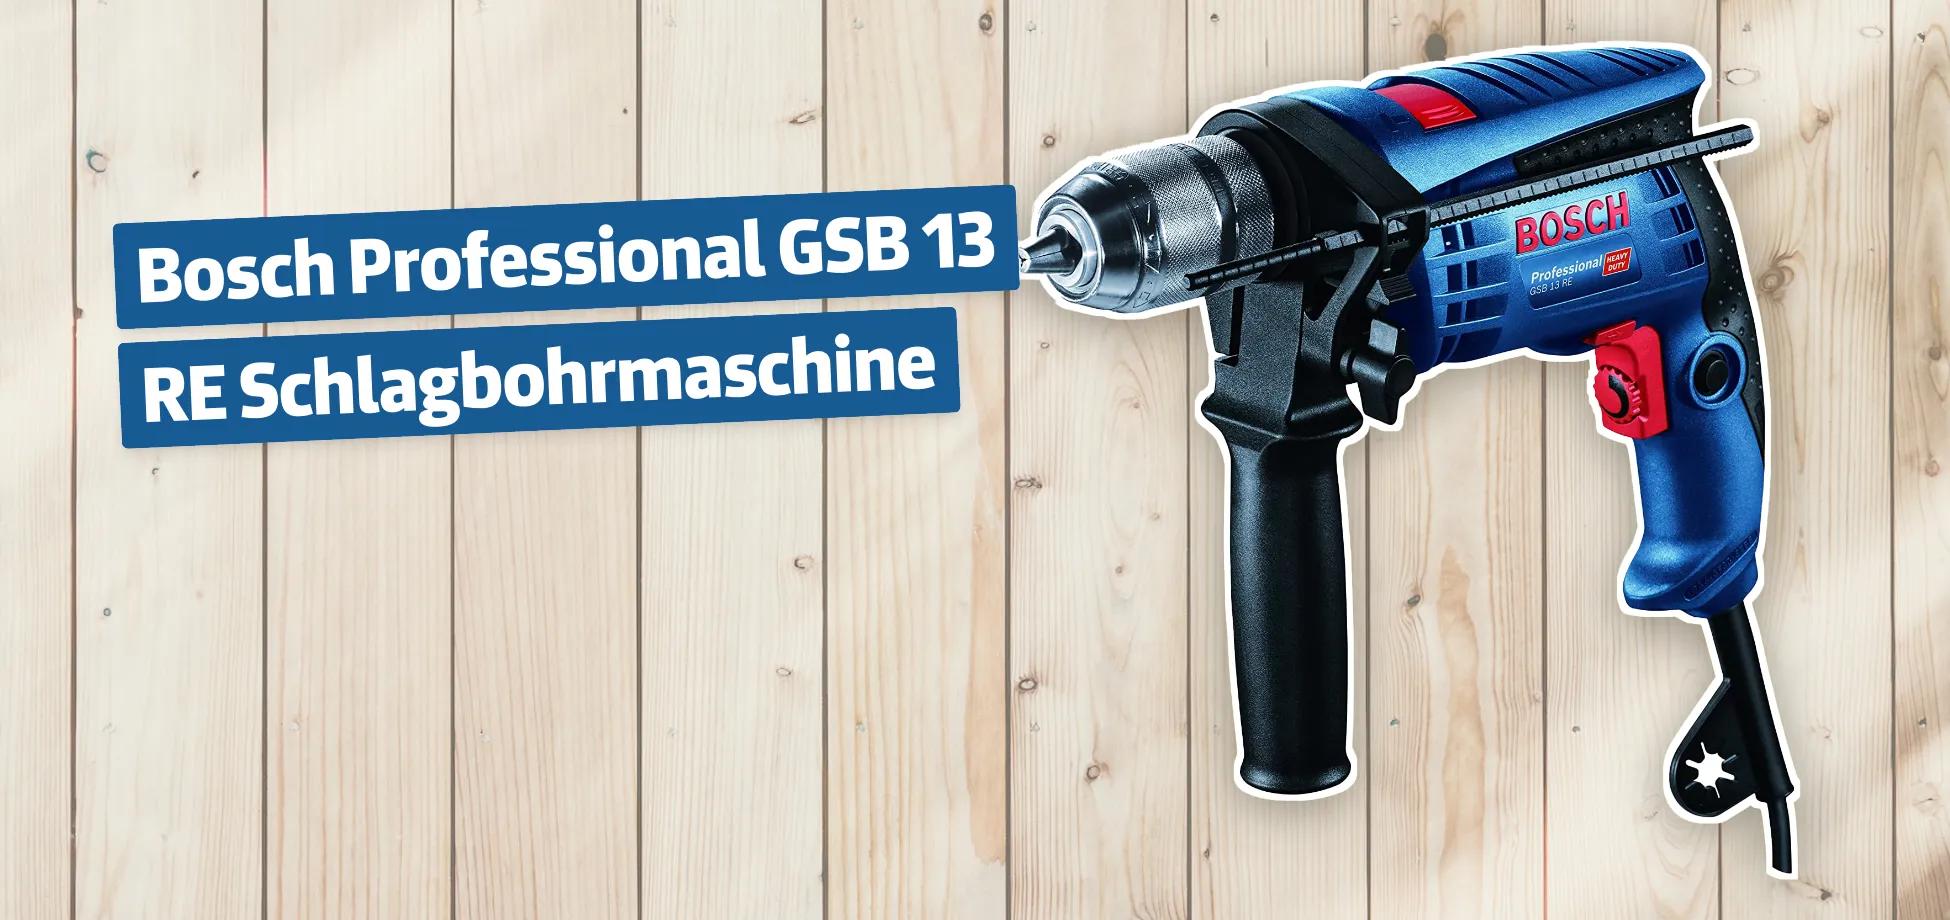 Bosch Professional GSB 13 RE Schlagbohrmaschine